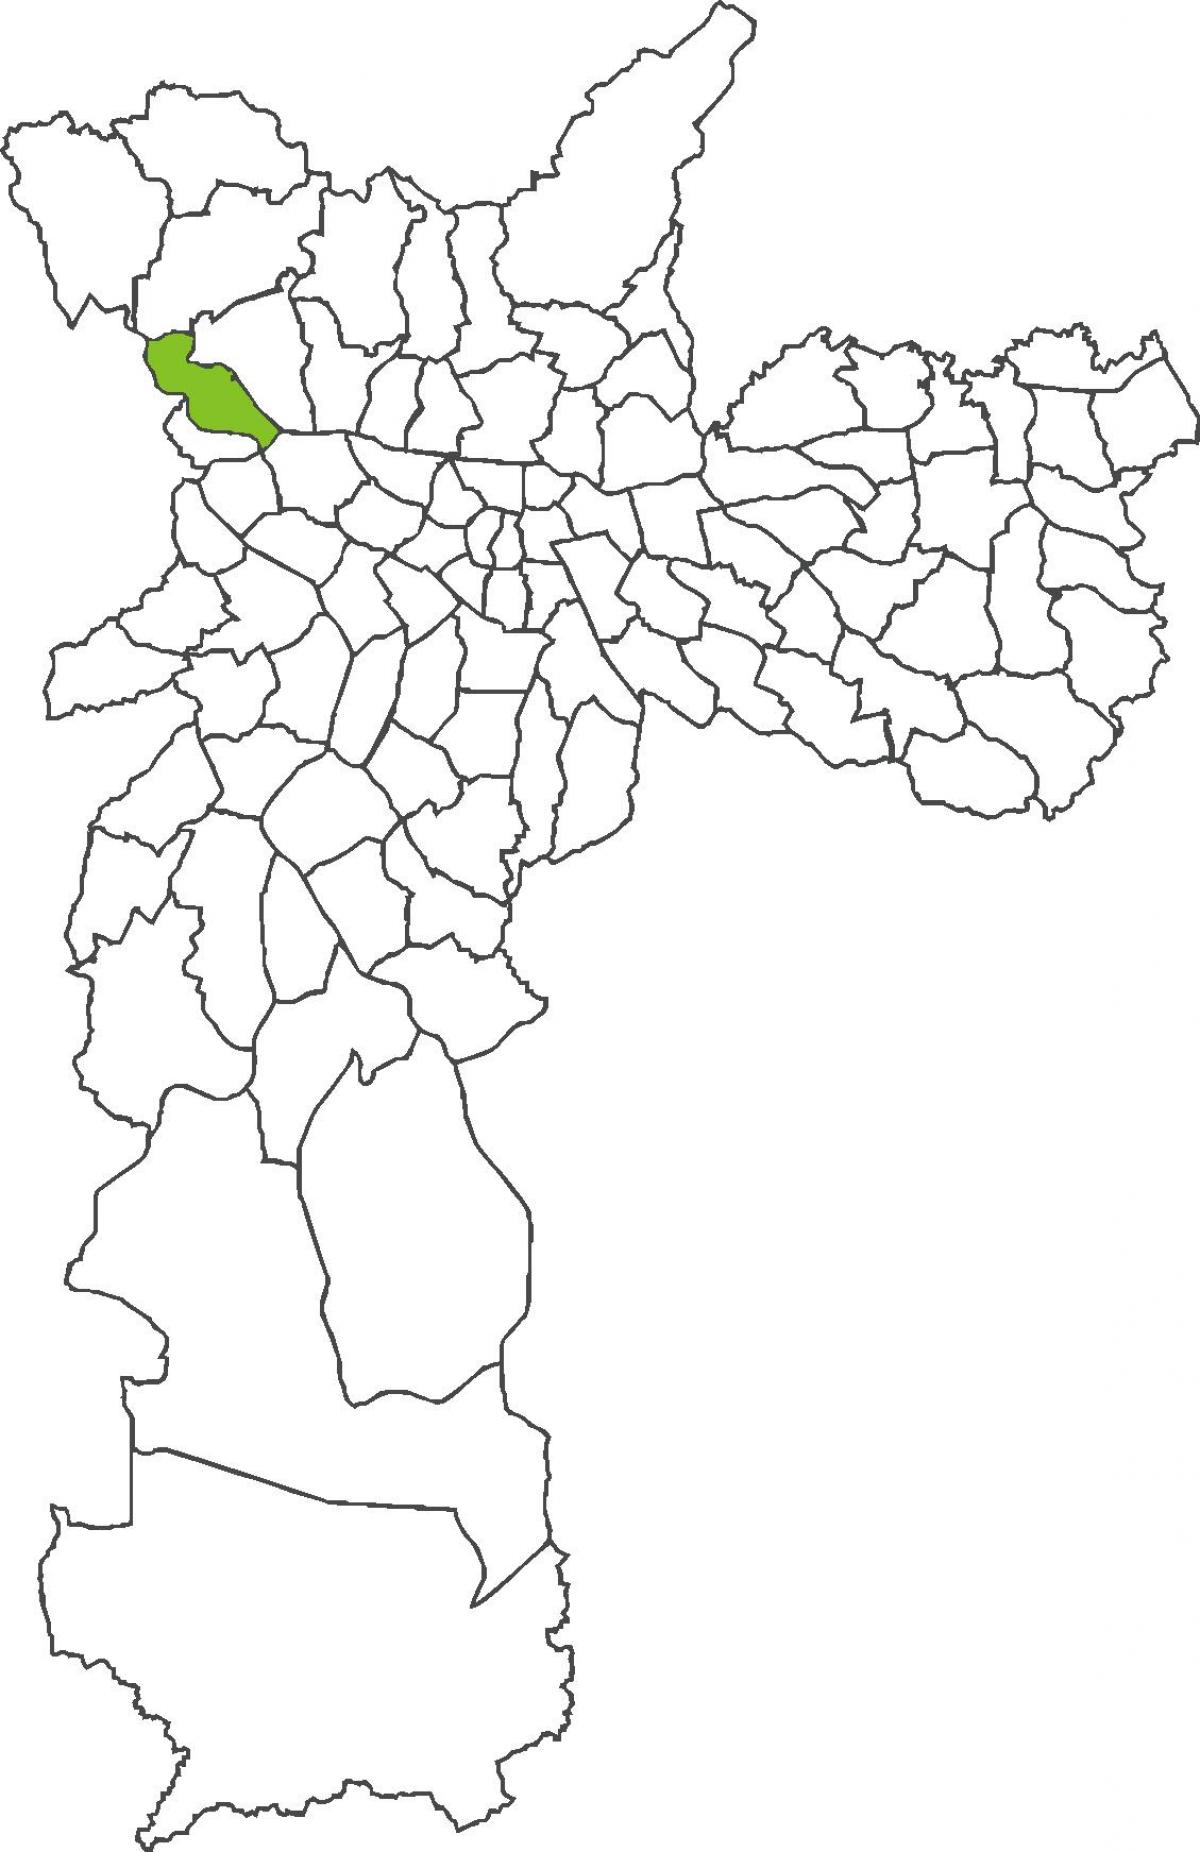 નકશો સાઓ Domingos જિલ્લા